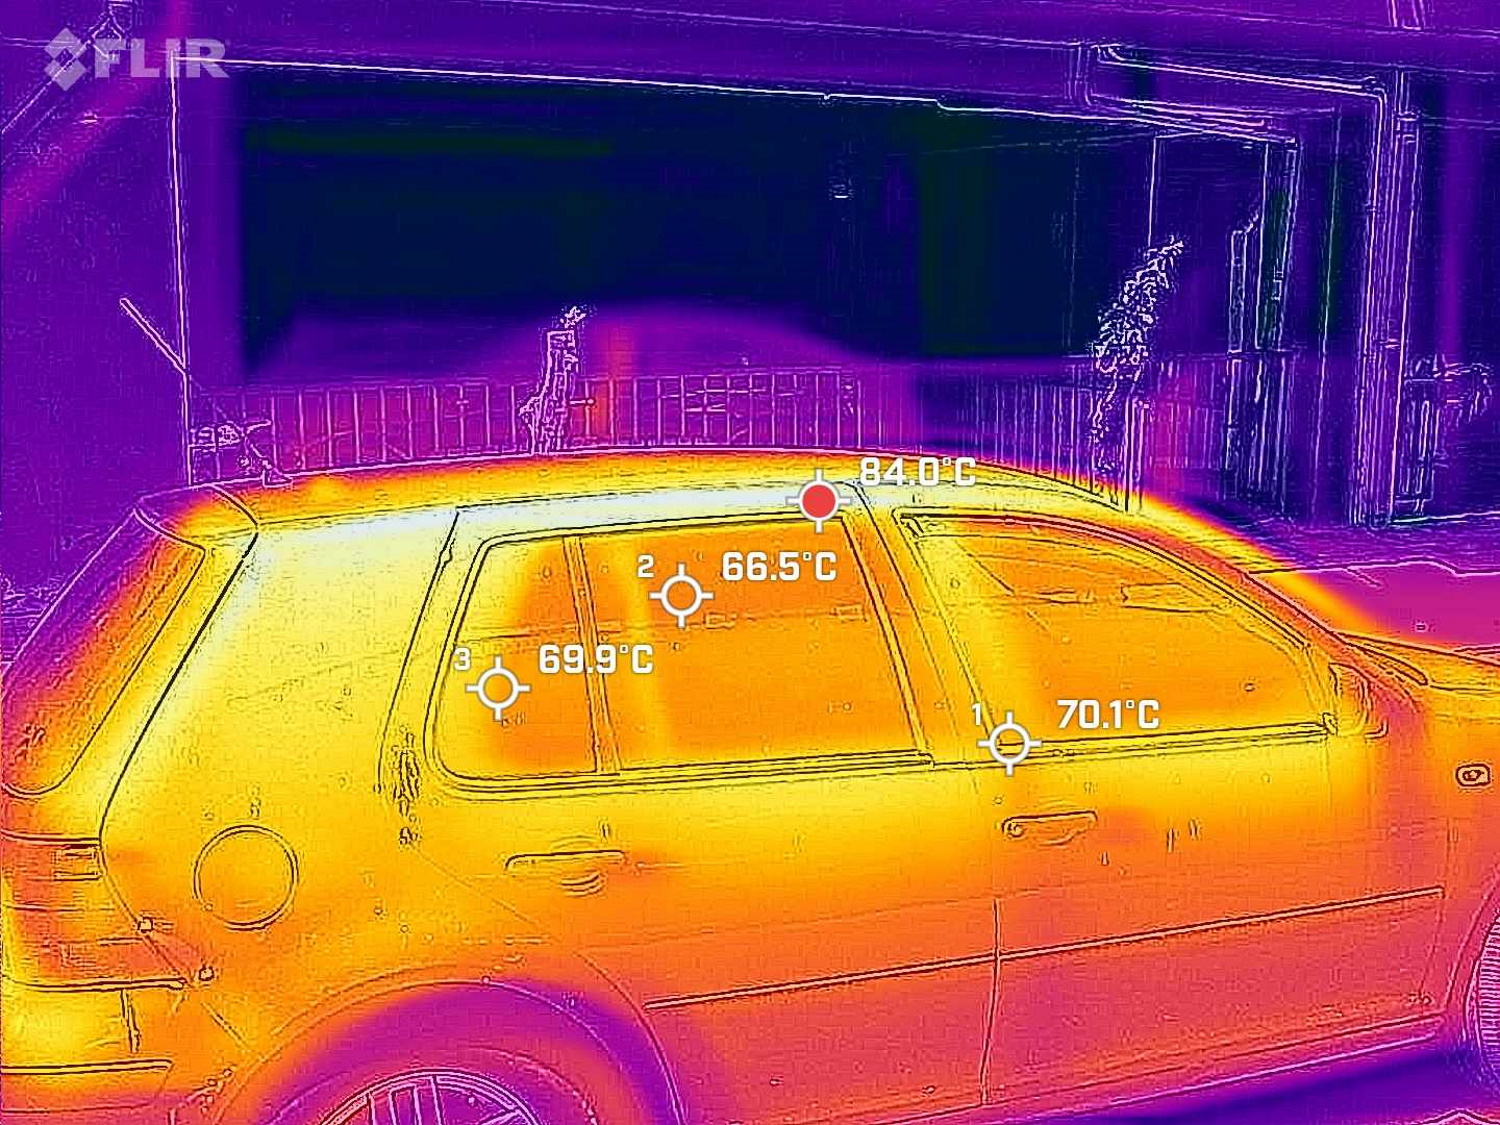 Καύσωνας Κλέων: Οι θερμοκρασίες που κατέγραψε θερμική κάμερα – Μέχρι και 84 βαθμούς στην οροφή αυτοκινήτου